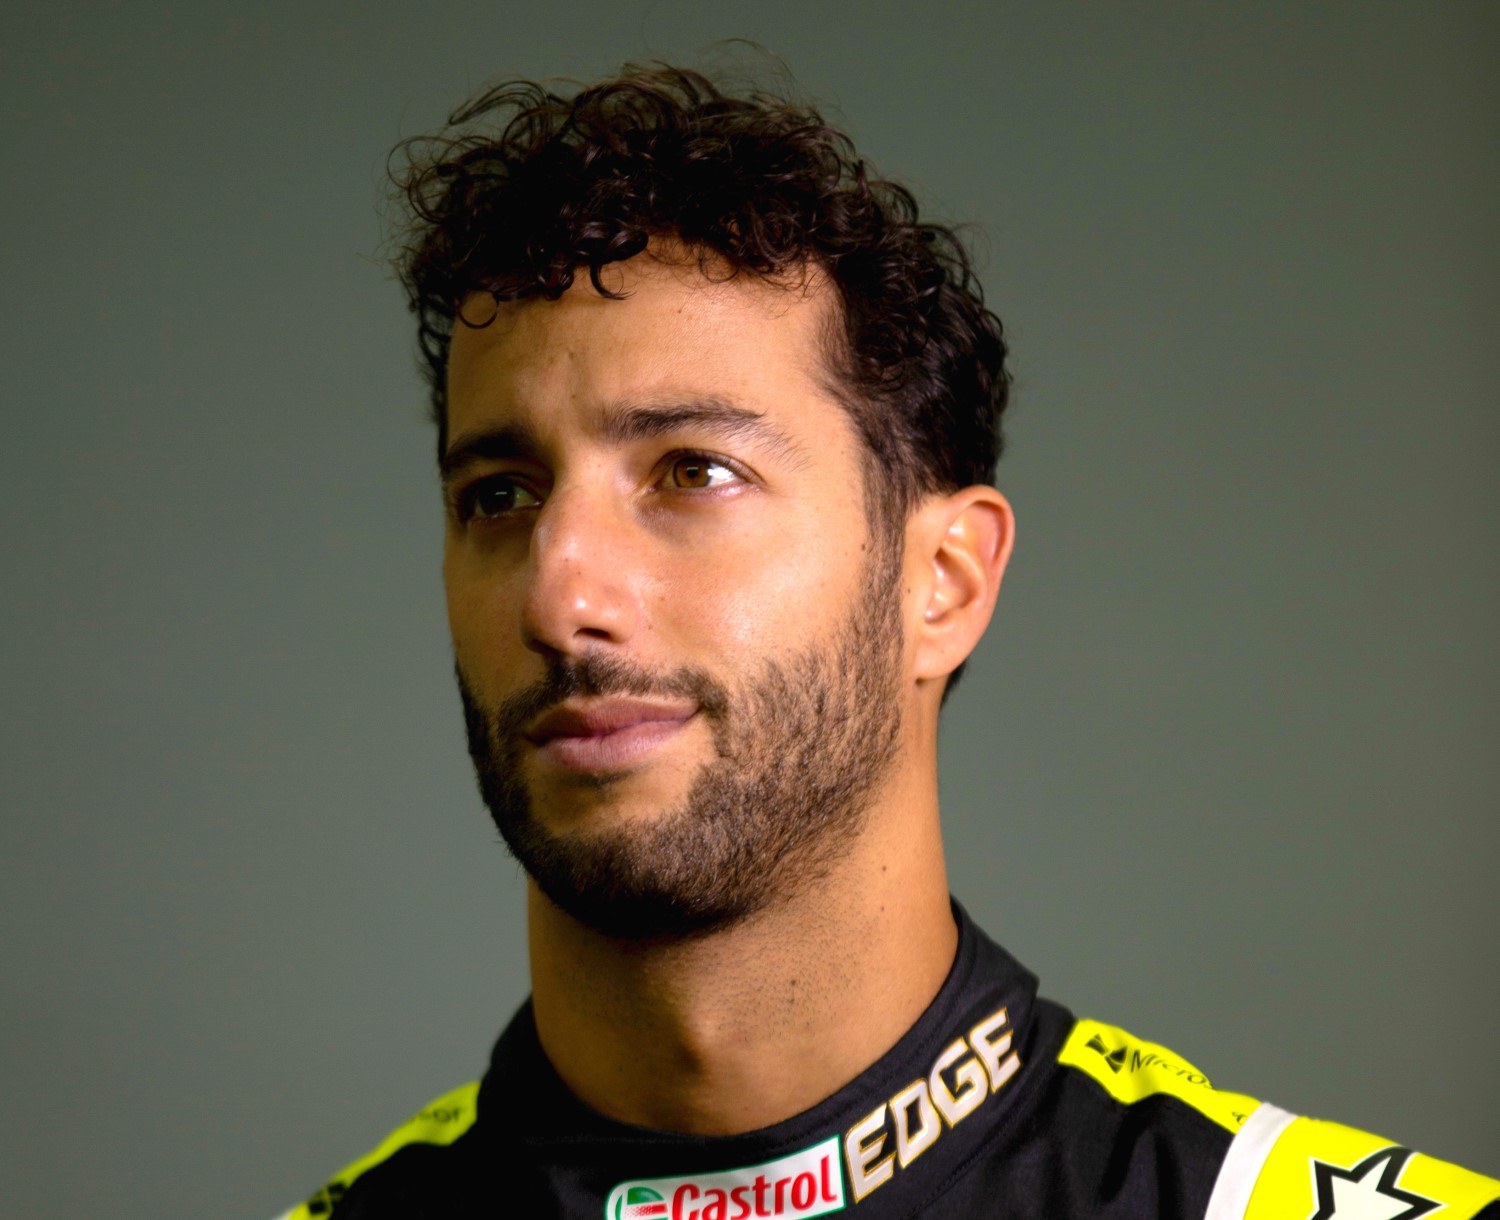 No SIM games for Daniel Ricciardo